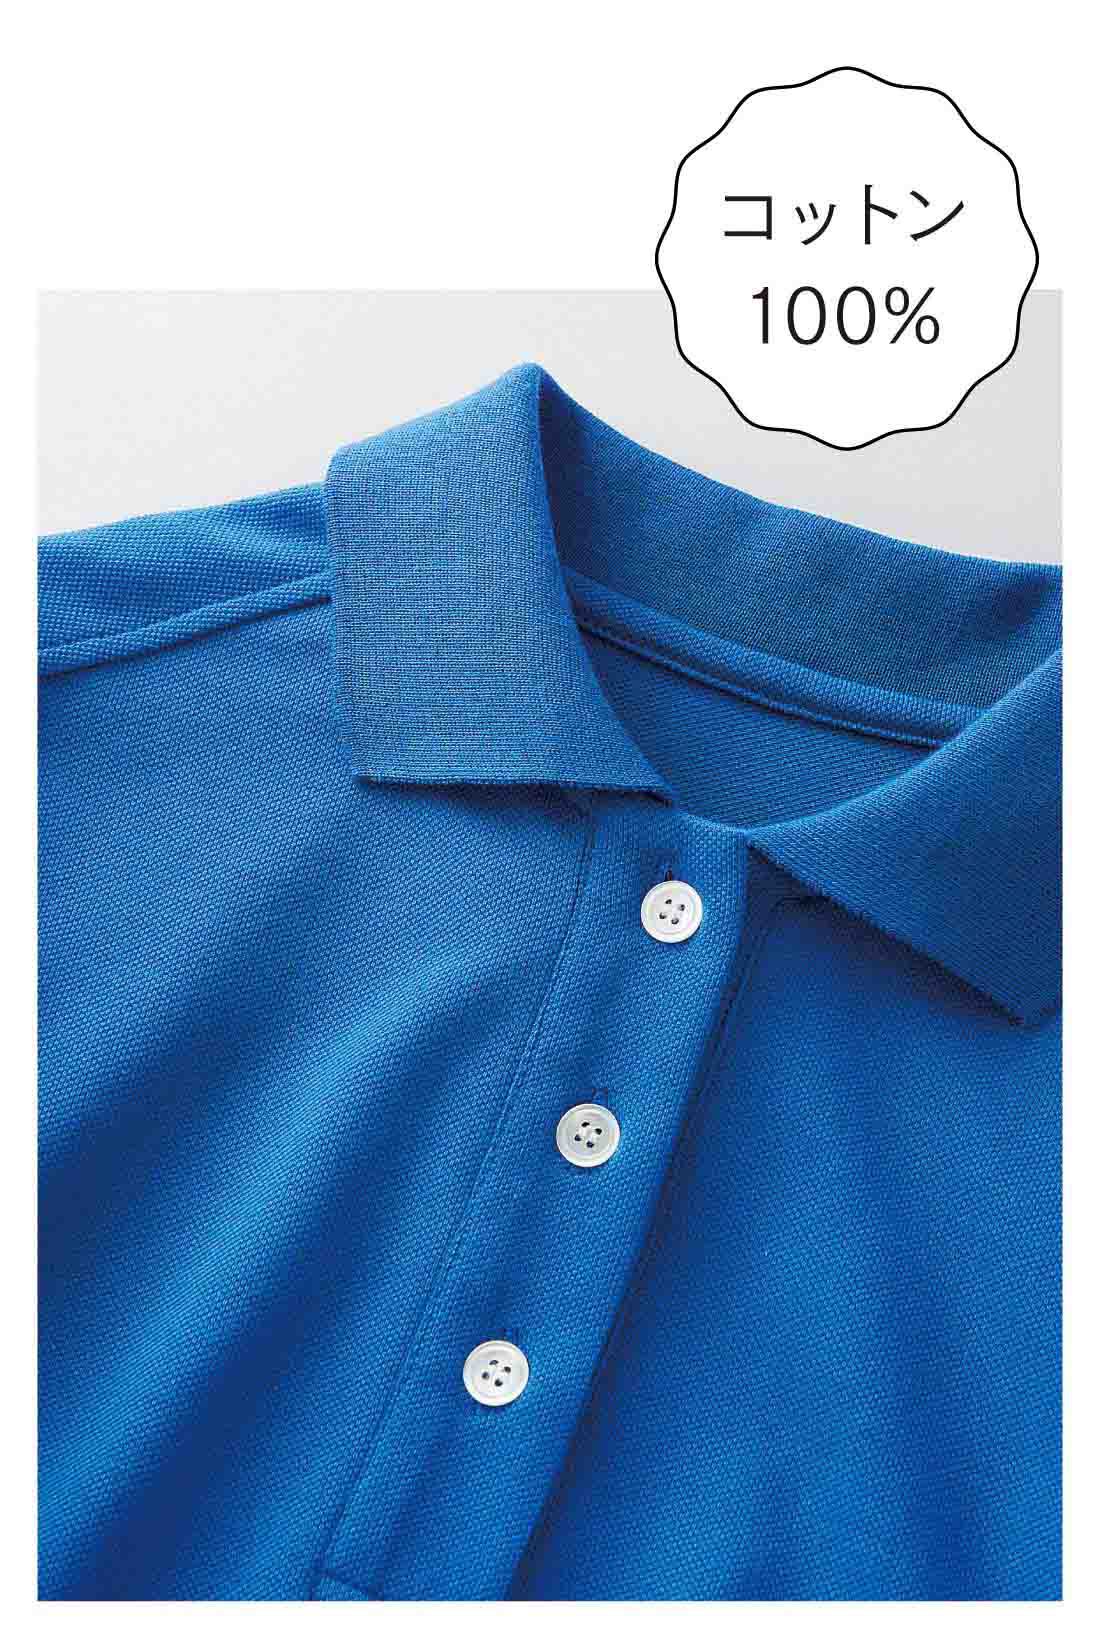 IEDIT|コットン100％ かのこ編みの涼やかパフスリーブポロシャツ〈ブルー〉【おはだが気になるみんなへ】|リブの衿まで綿100％にこだわった、さらっとやわらかな肌心地のかのこ編みカットソー。